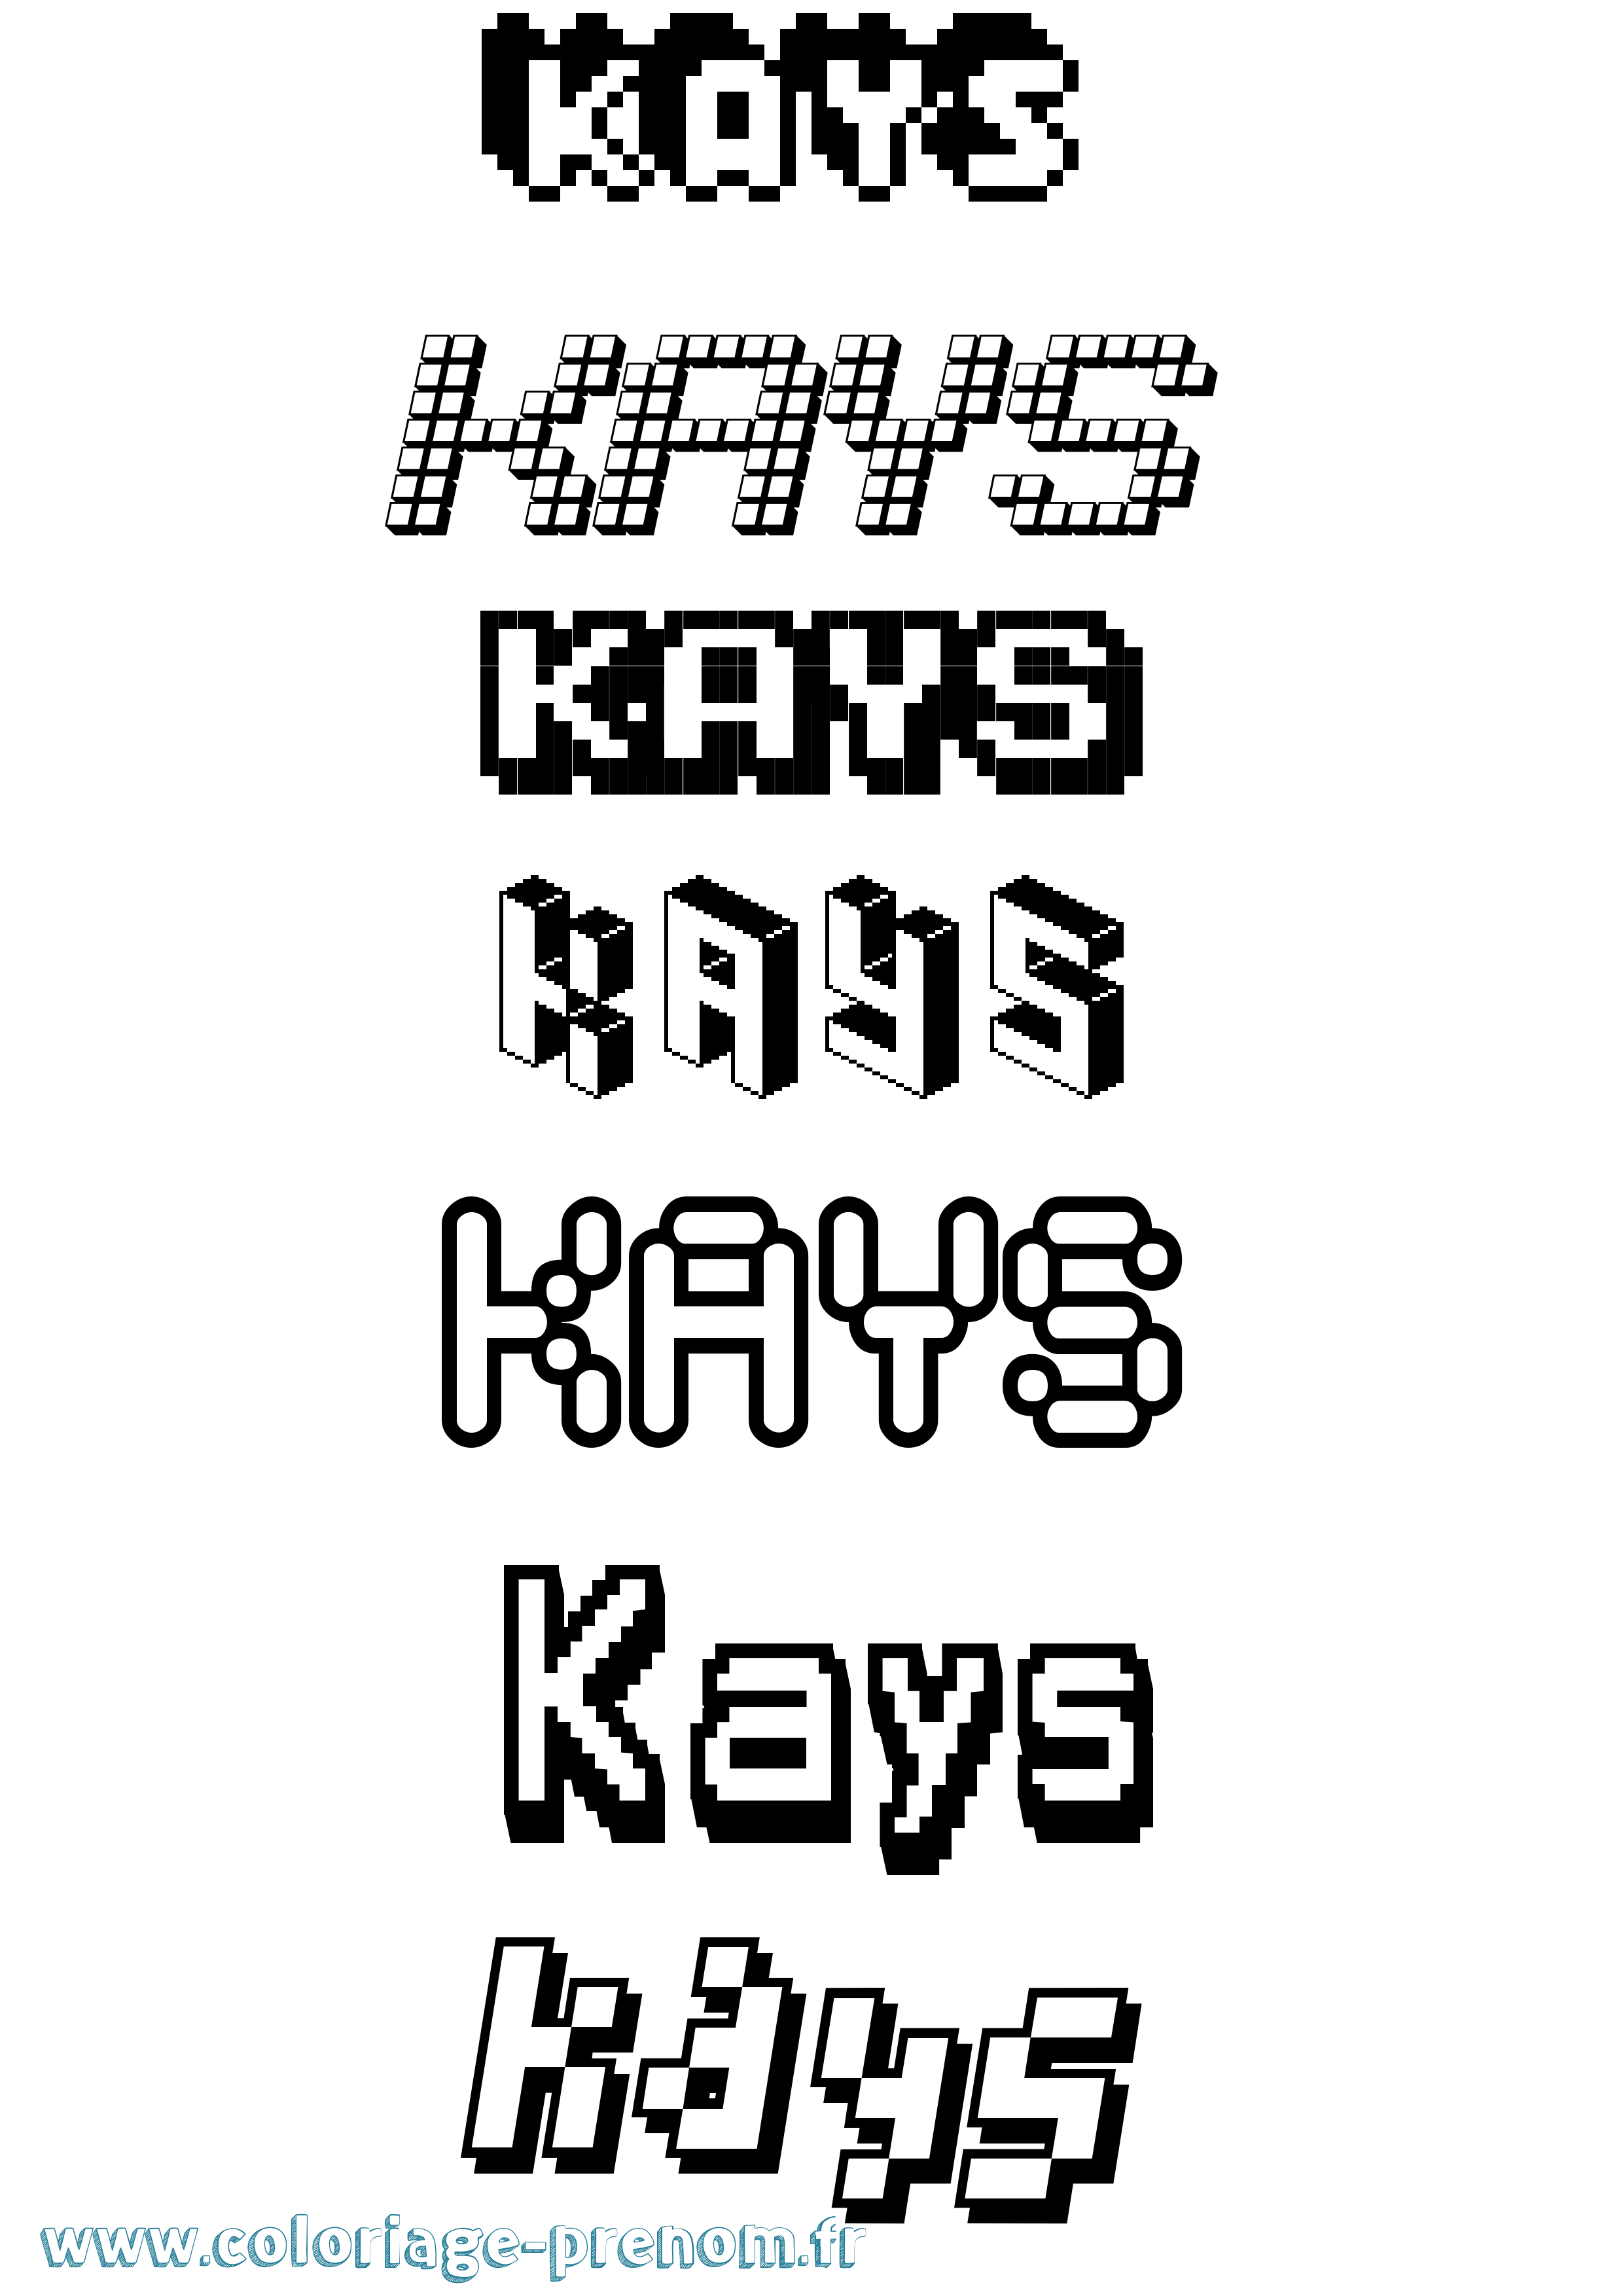 Coloriage prénom Kays